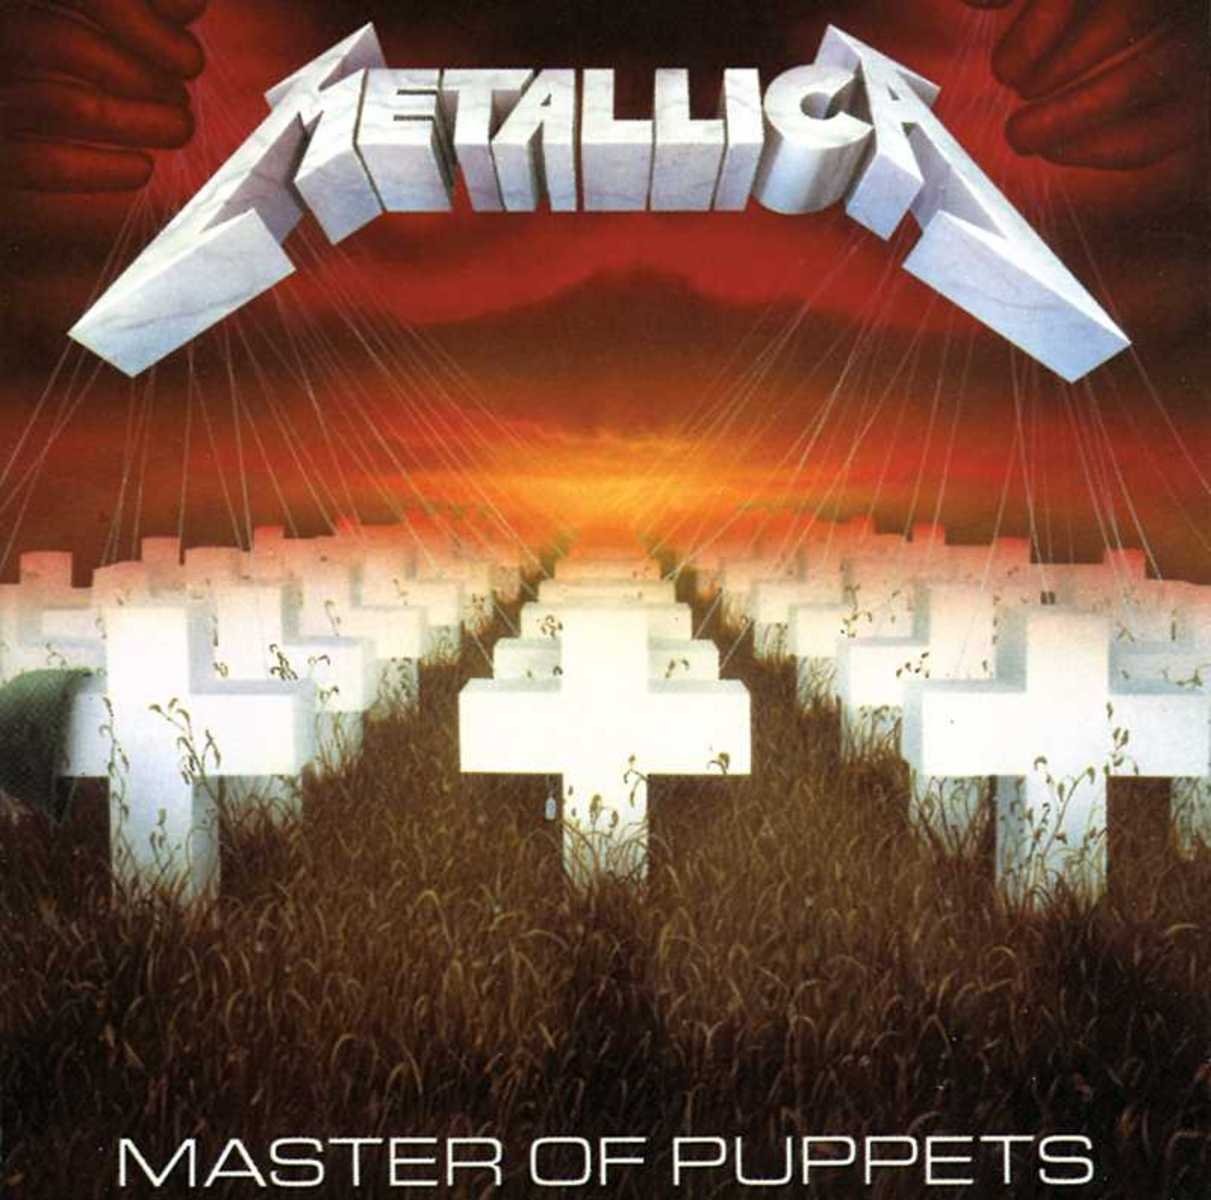 Master Of Puppets von Metallica zum besten Metal-Album aller Zeiten gewhlt